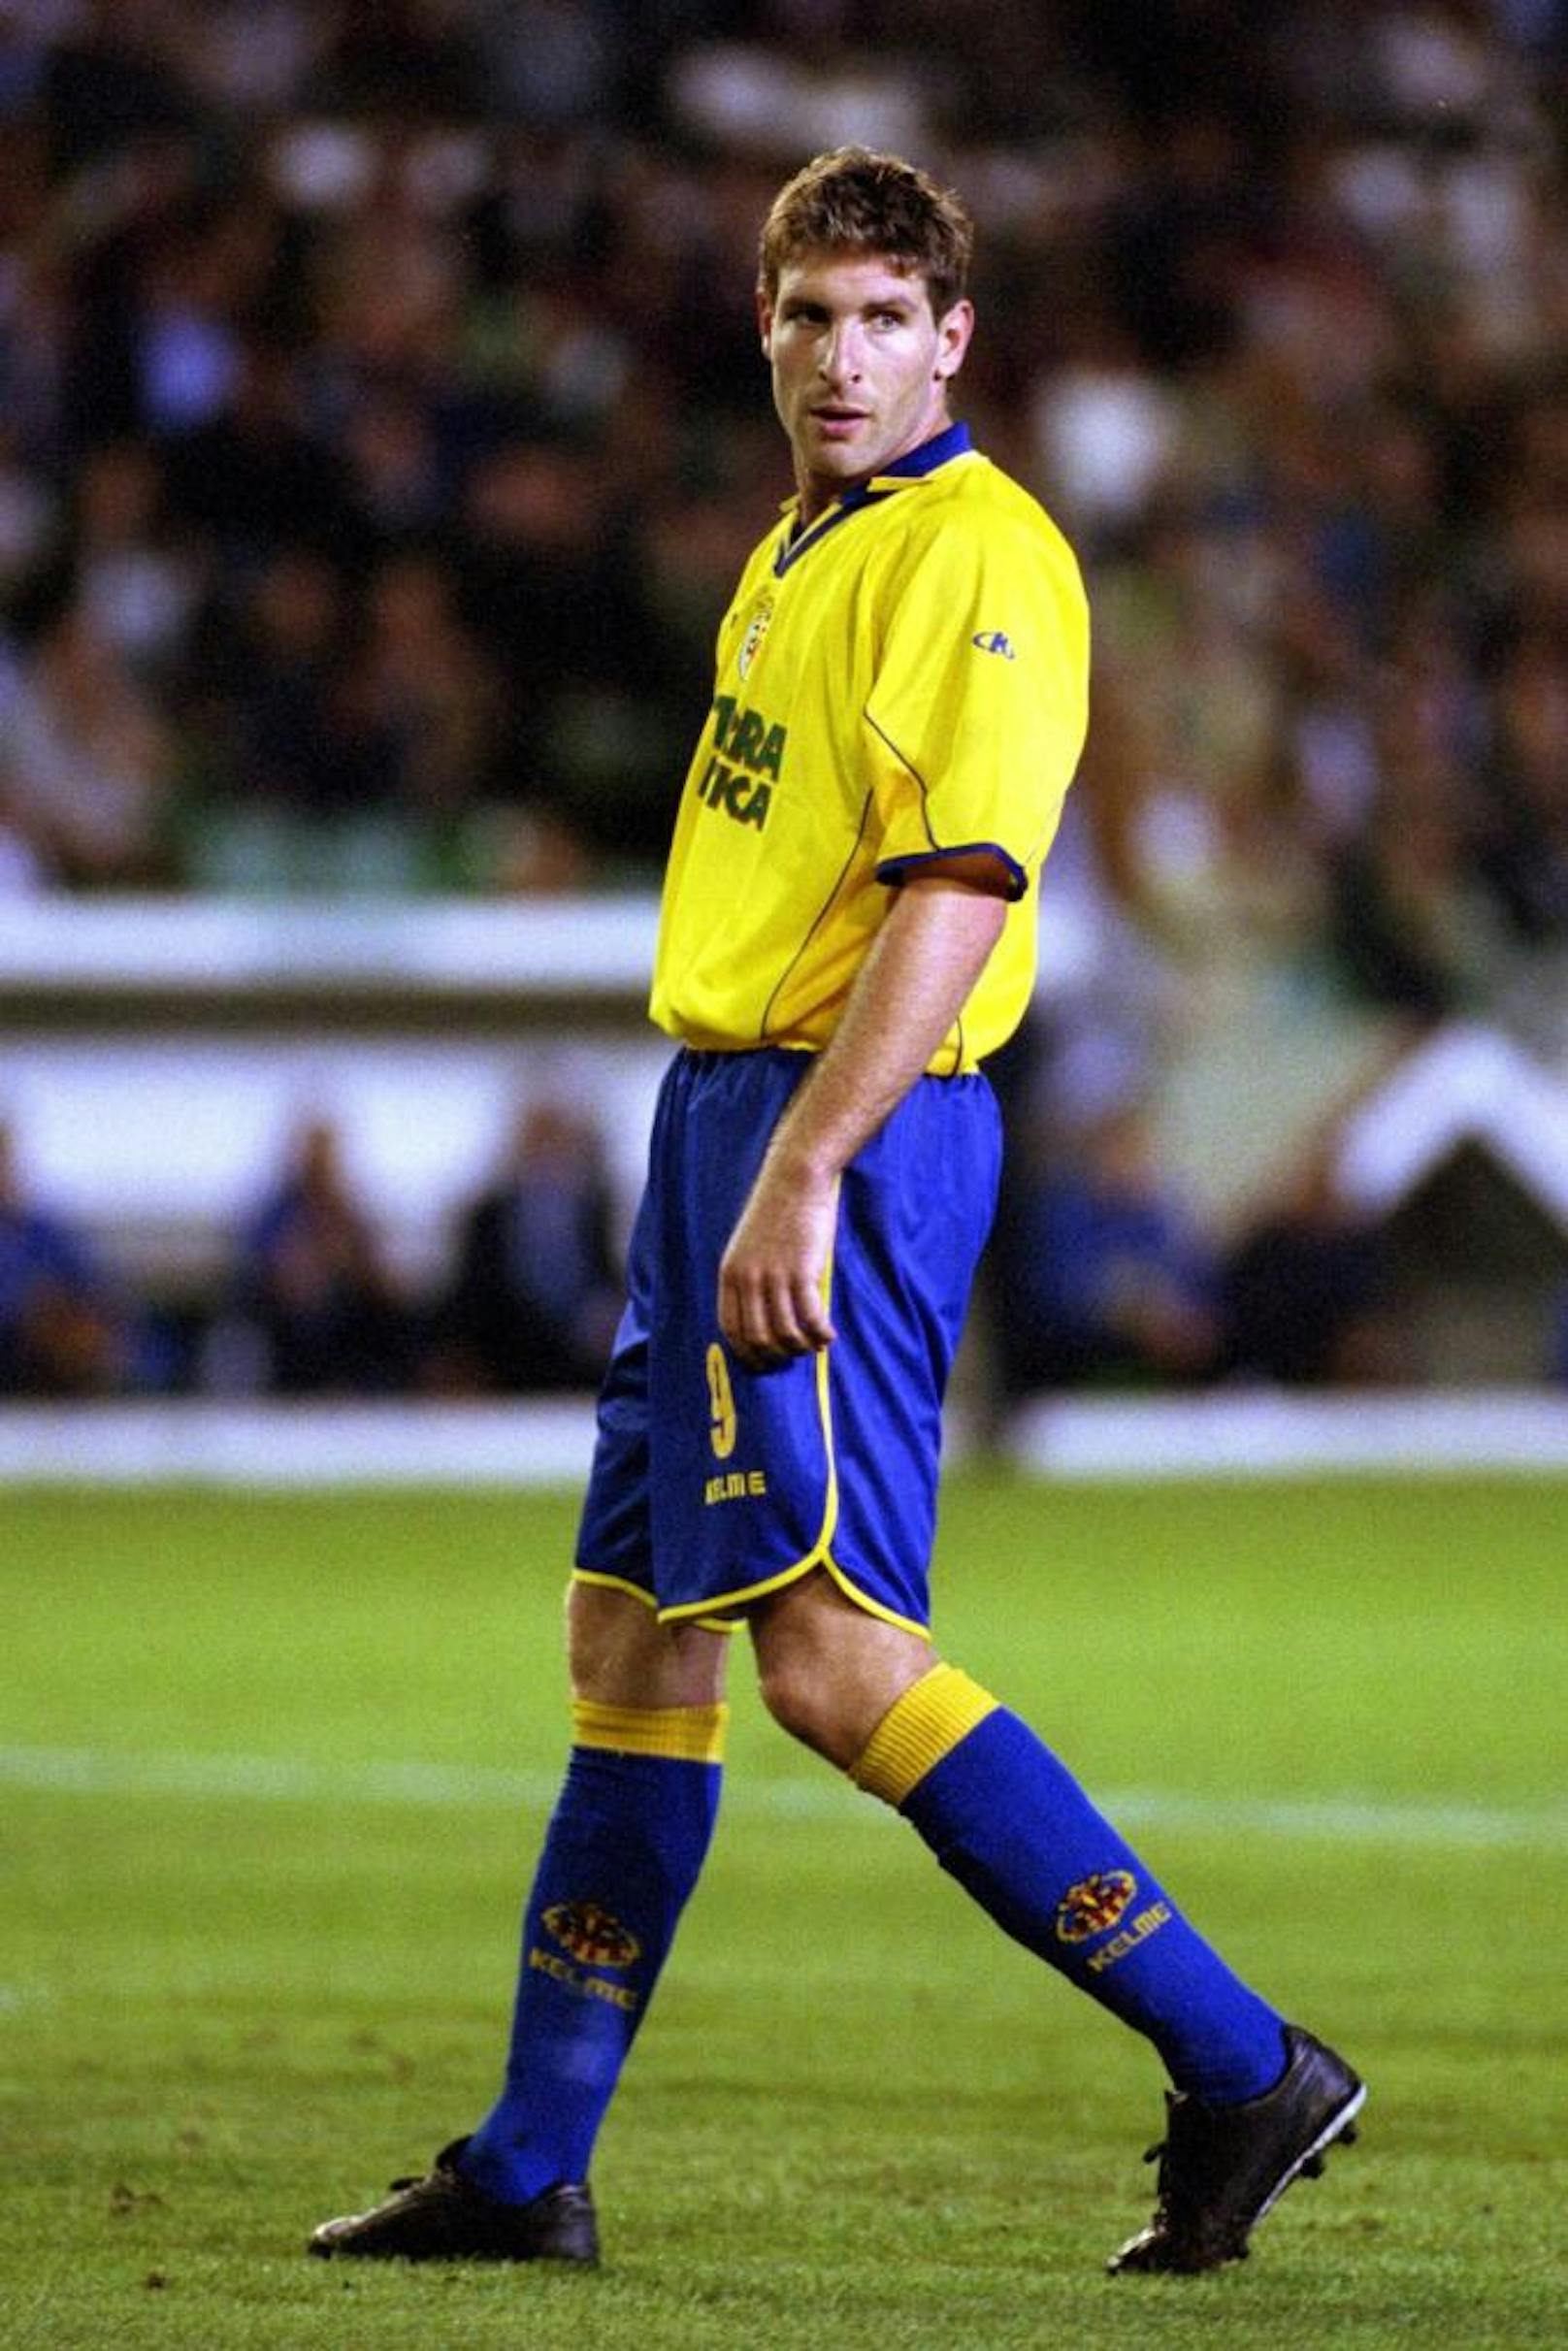 Villarreal-Spieler Martin Palermo sprang 2002 beim Torjubel auf eine Mauer. Die Mauer brach ein, der Argentinier zog sich einen Schien- und Wadenbeinbruch zu. 